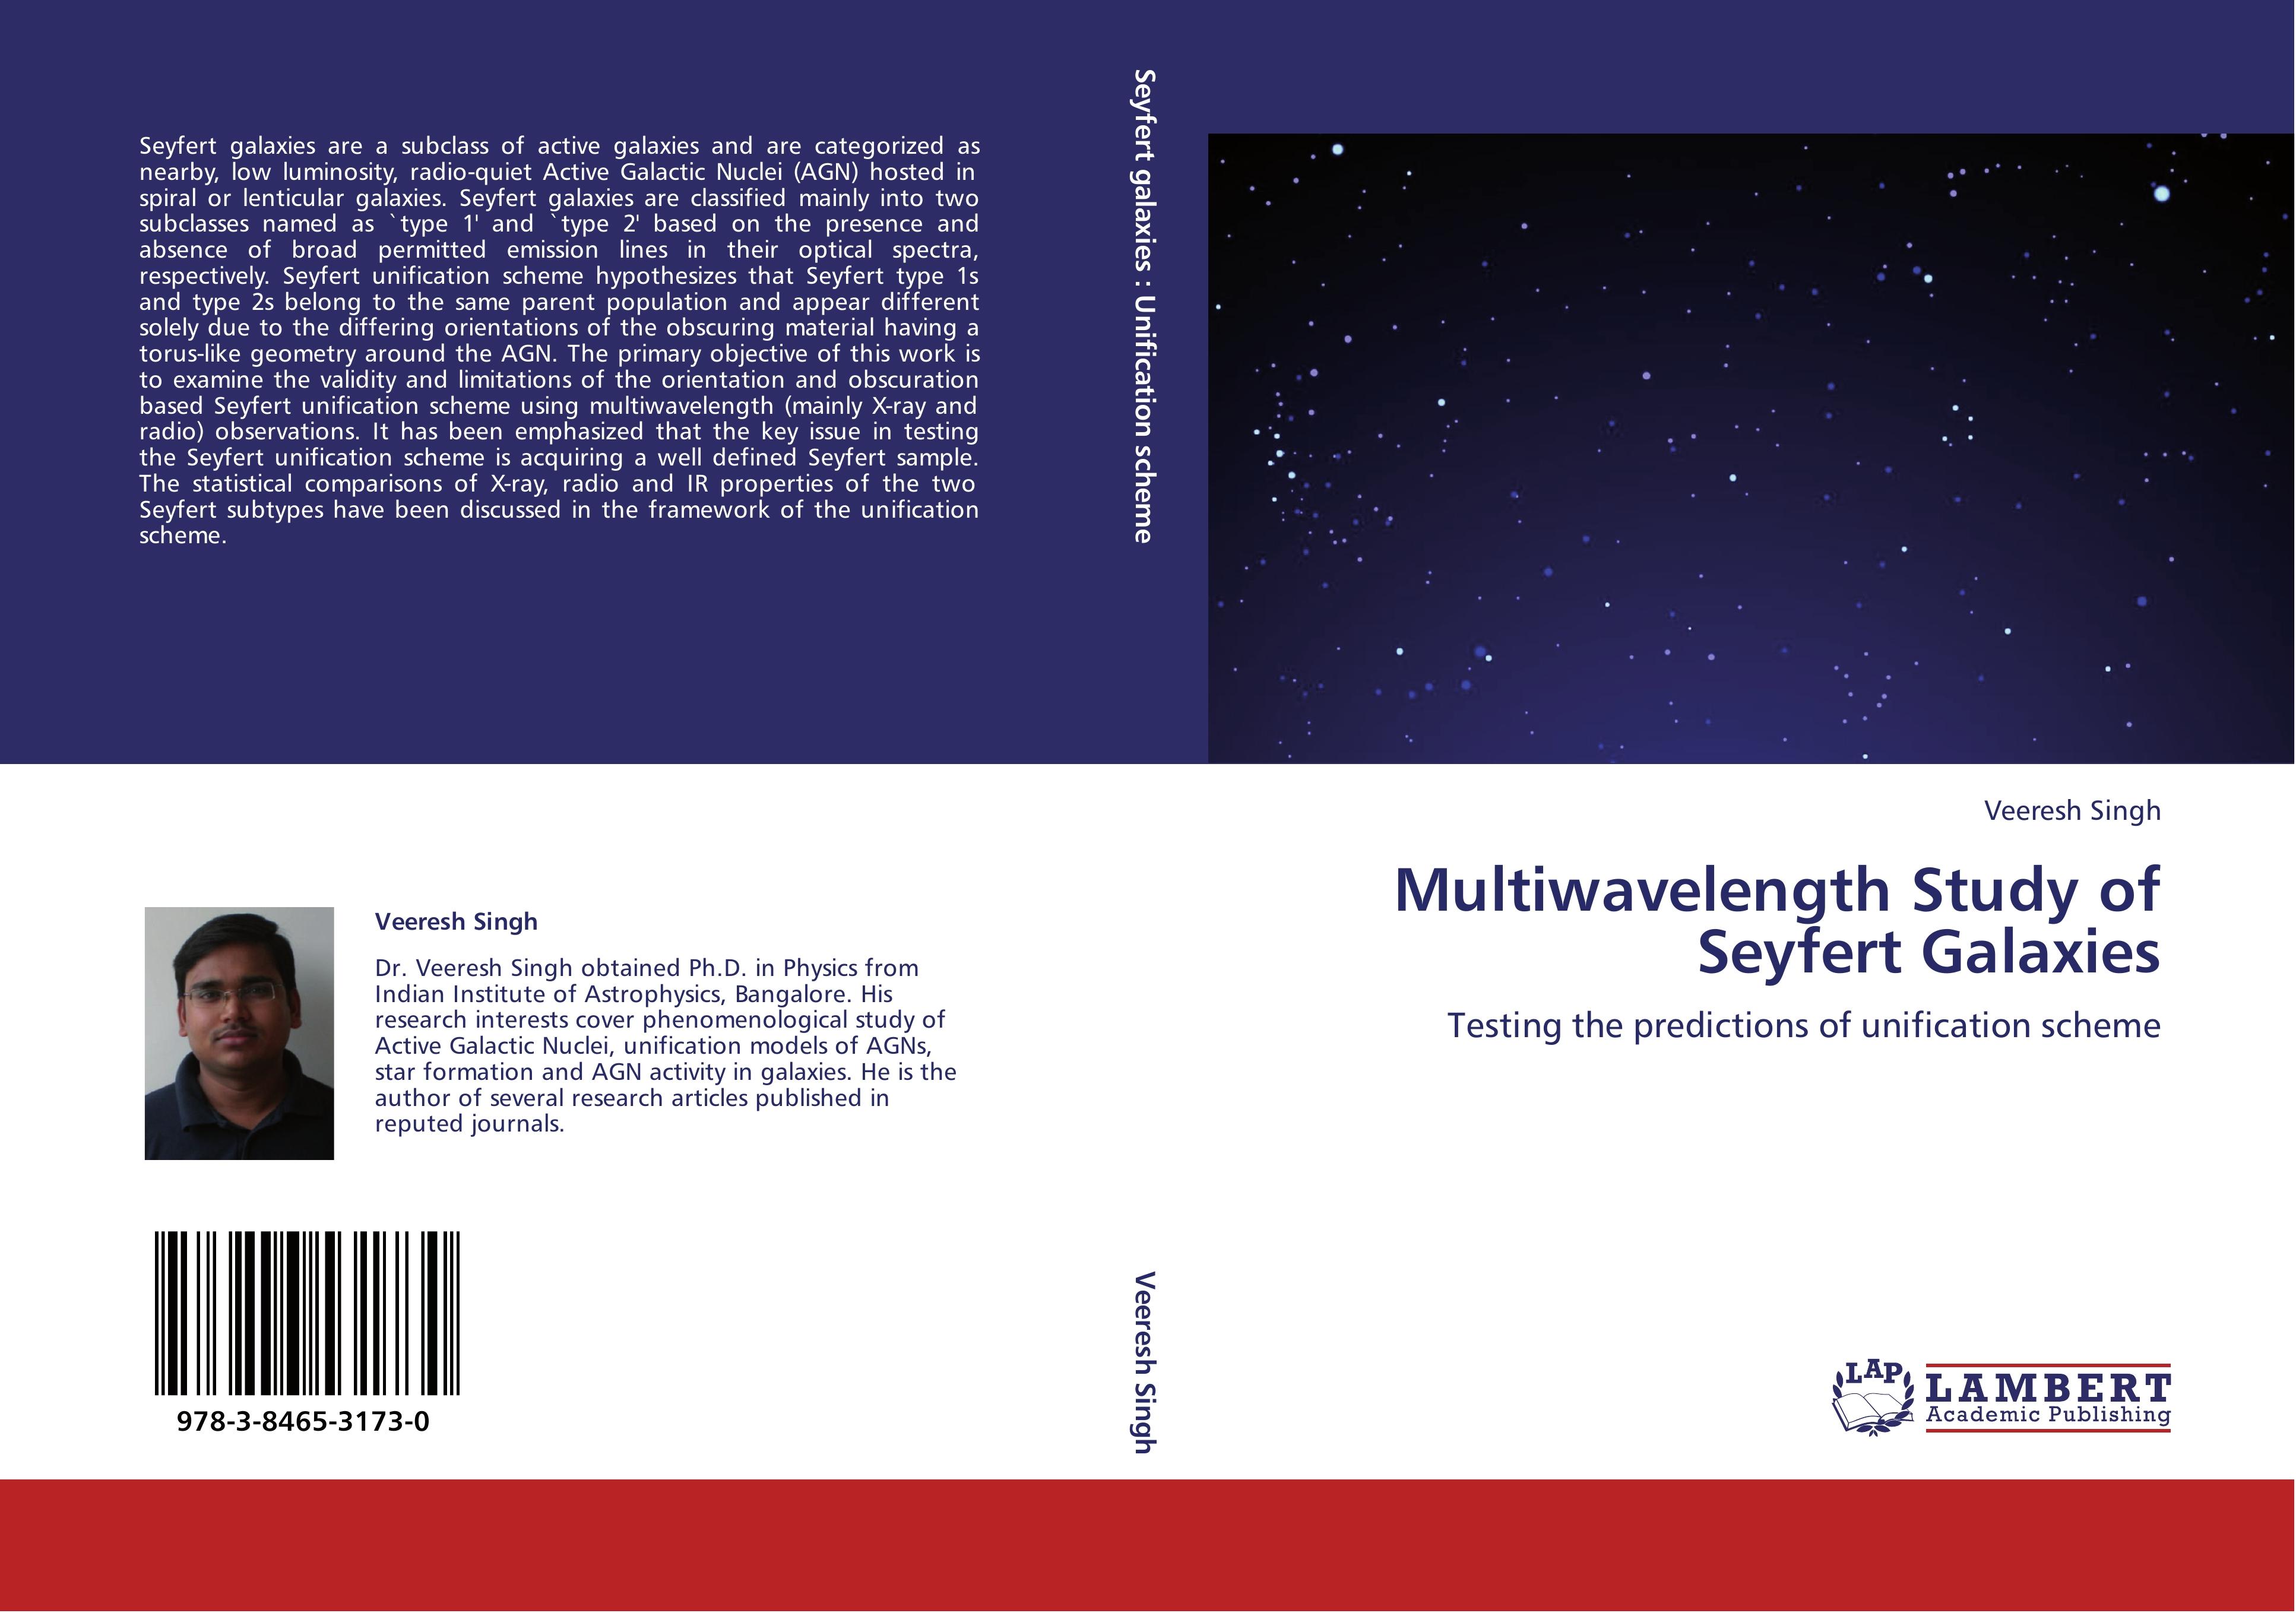 Multiwavelength Study of Seyfert Galaxies - Veeresh Singh